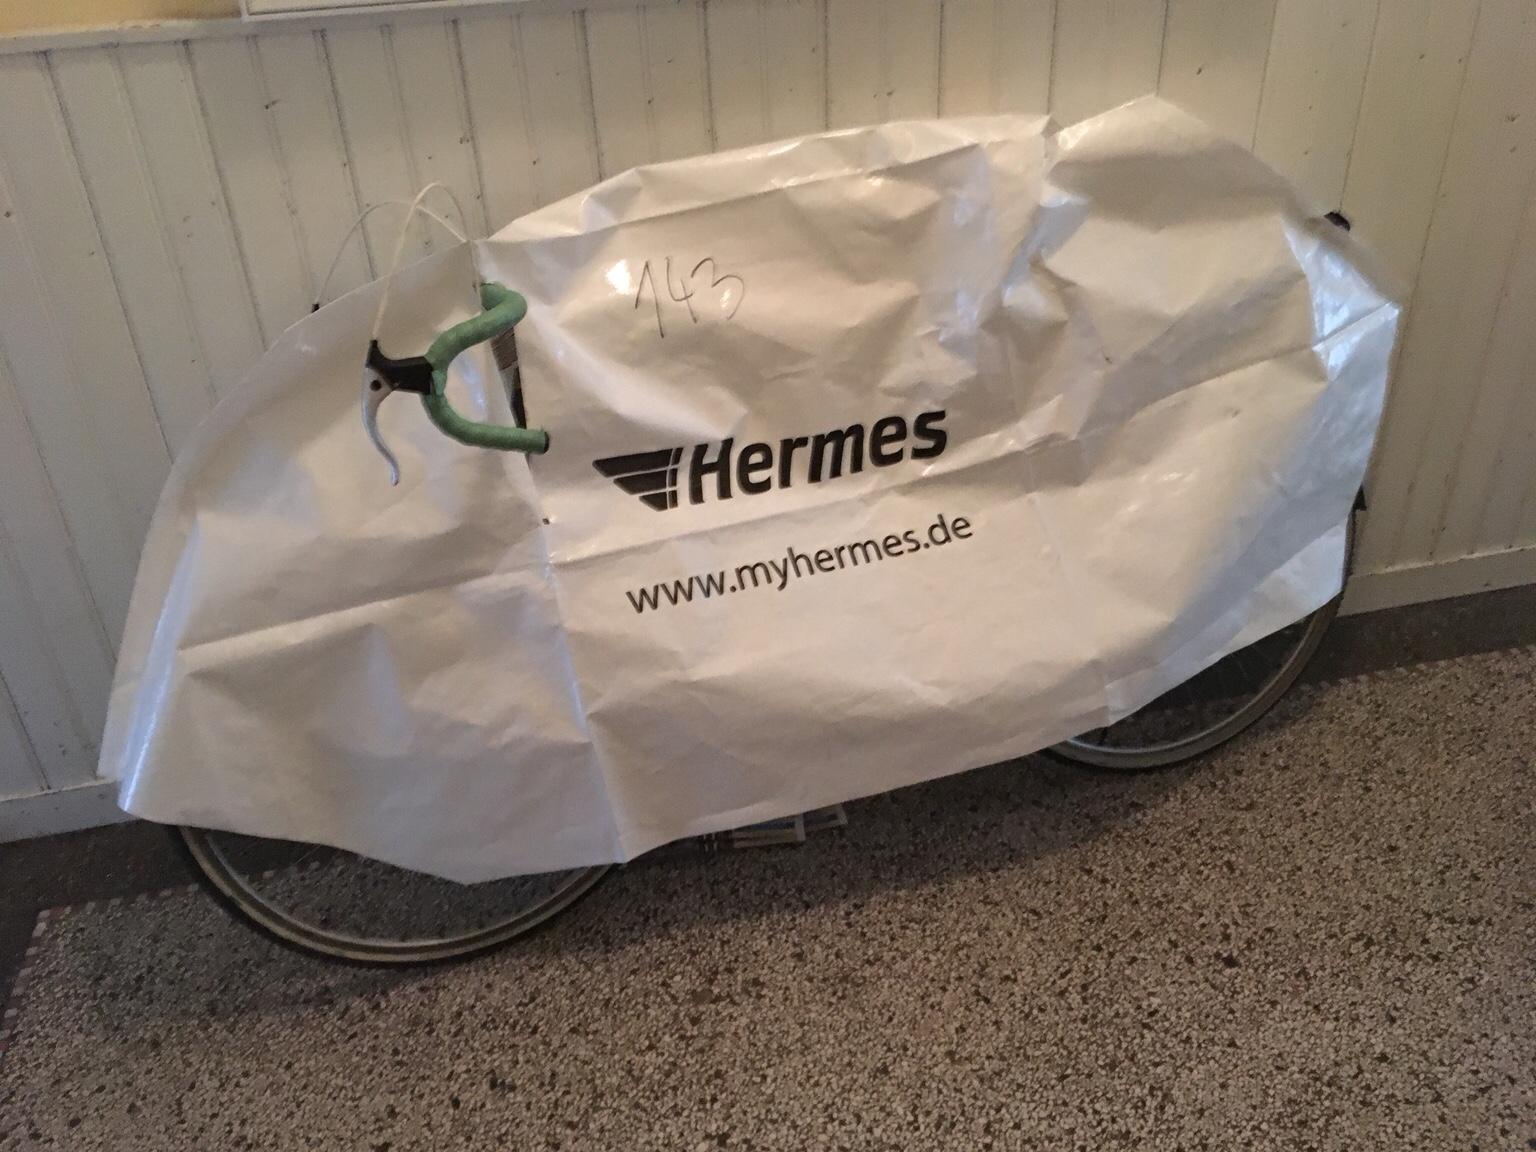 Fahrrad Versand Mit Hermes fahrradbic